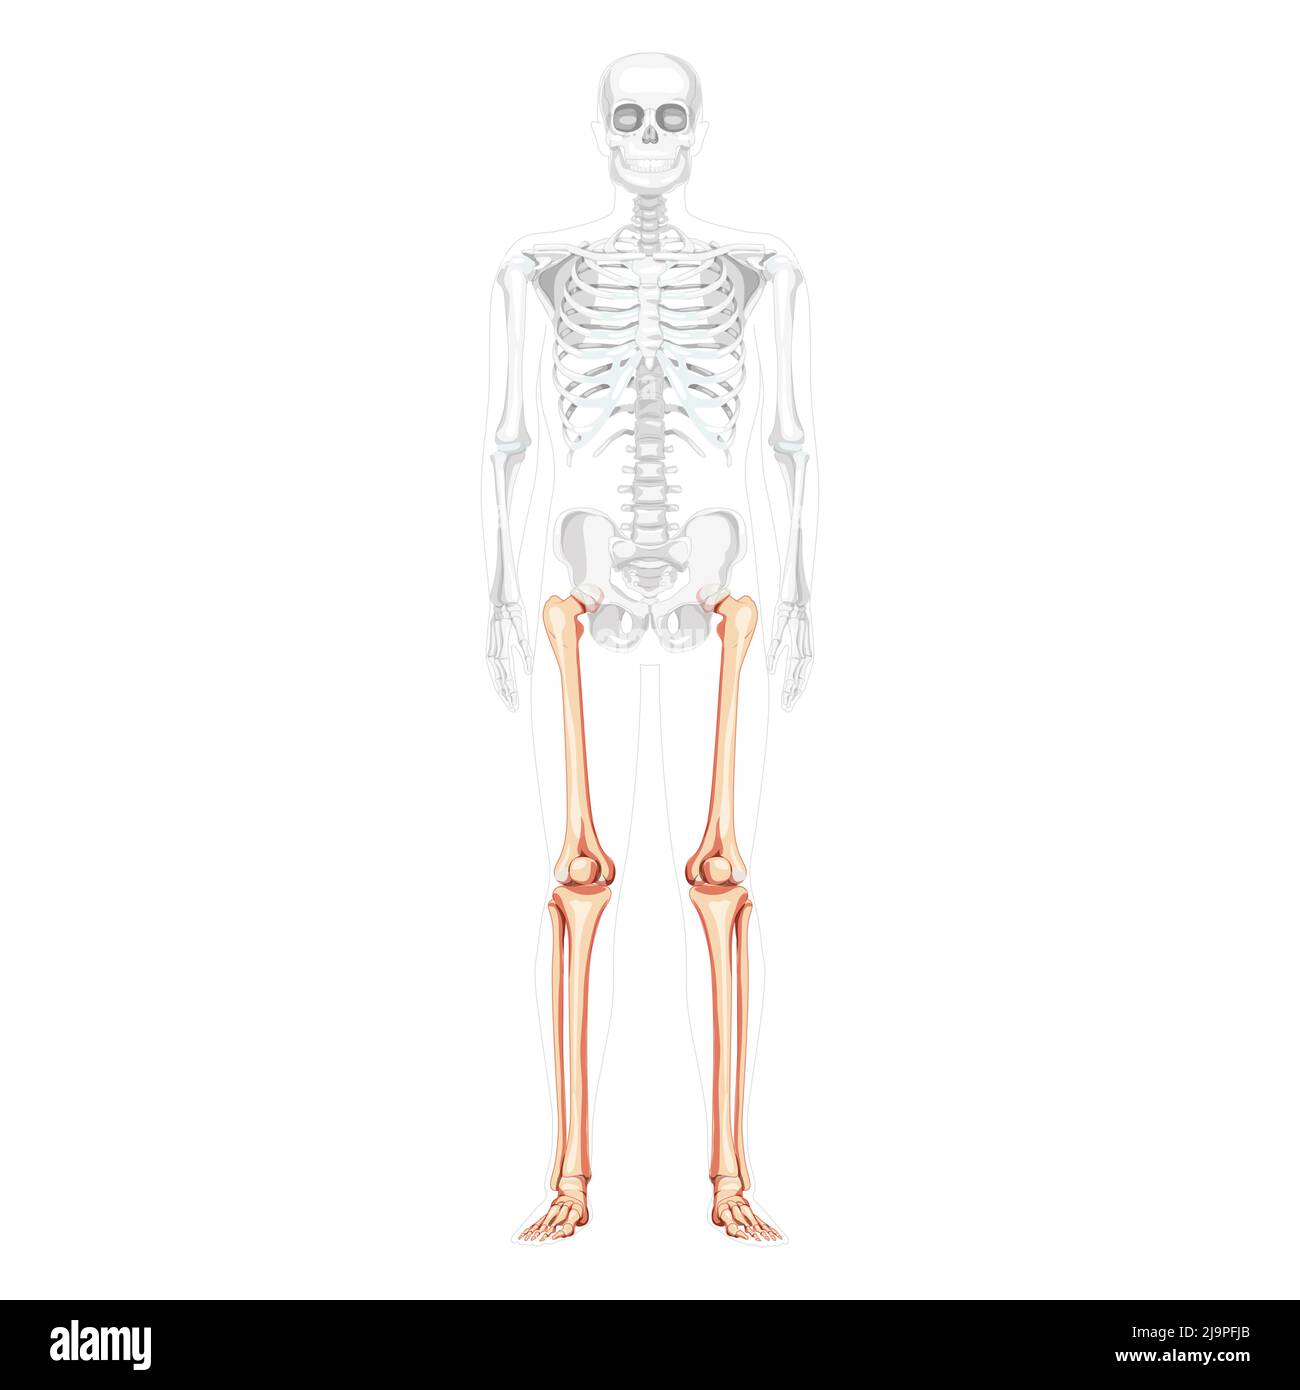 Squelette cuisses et jambes membre inférieur vue avant humaine avec position des os partiellement transparente. Fémur, patella, péroné, pied illustration vectorielle réaliste d'une anatomie isolée sur fond blanc Illustration de Vecteur